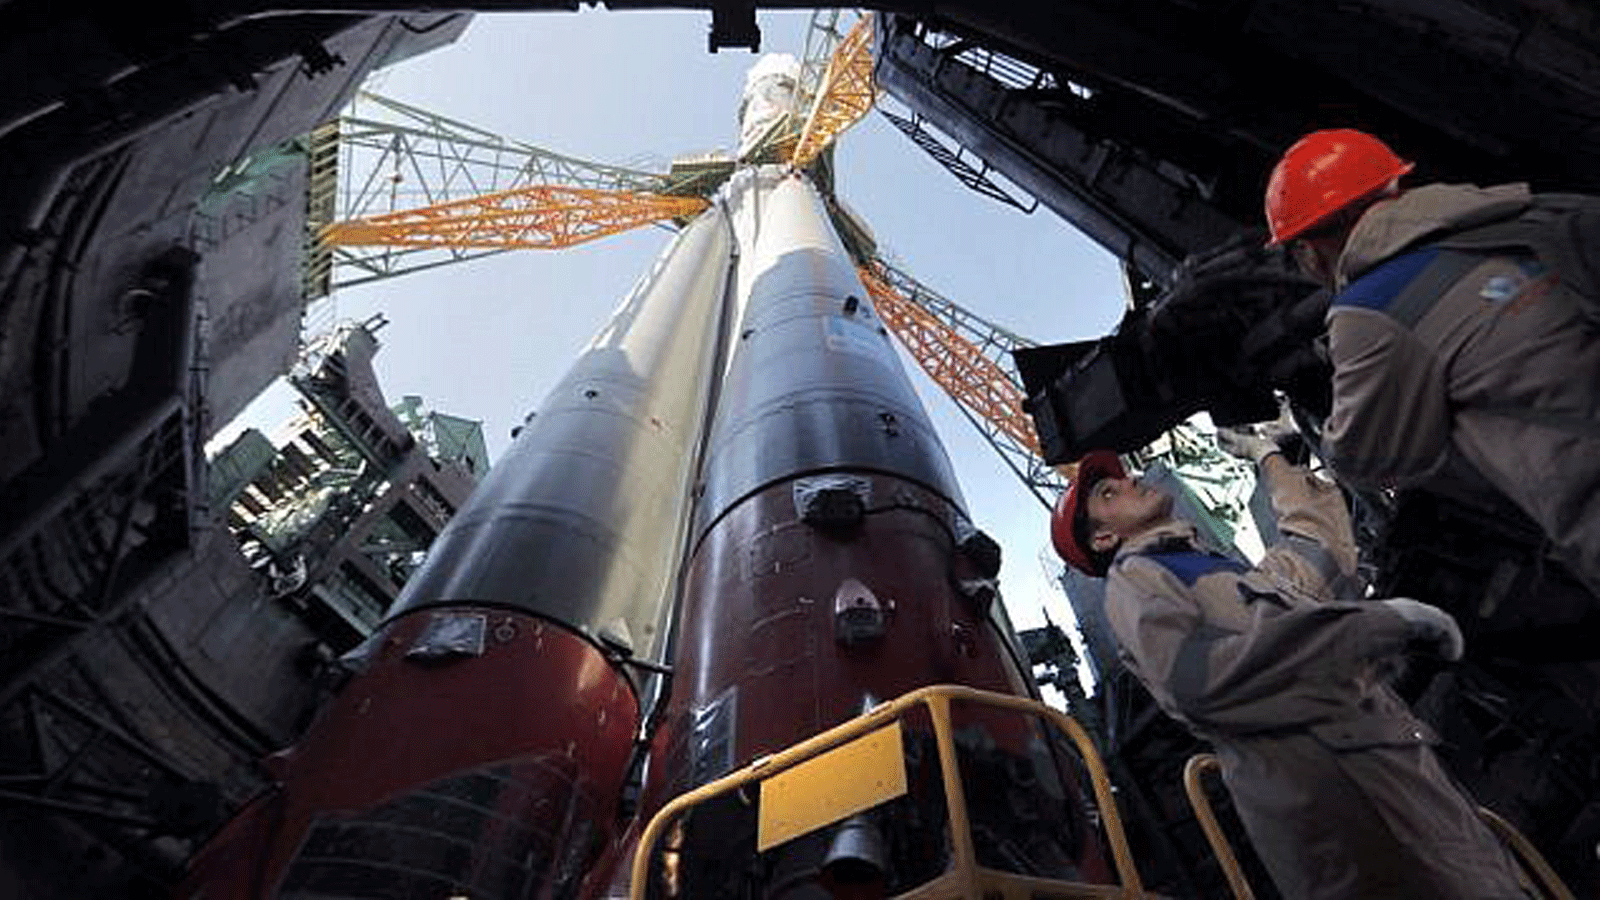 صاروخ Soyuz المعزز FG مع المركبة الفضائية Soyuz MS-15 مثبت على منصة الإطلاق في قاعدة بايكونور الفضائية المؤجرة لروسيا في كازاخستان. 23 أيلول\سبتمبر 2019